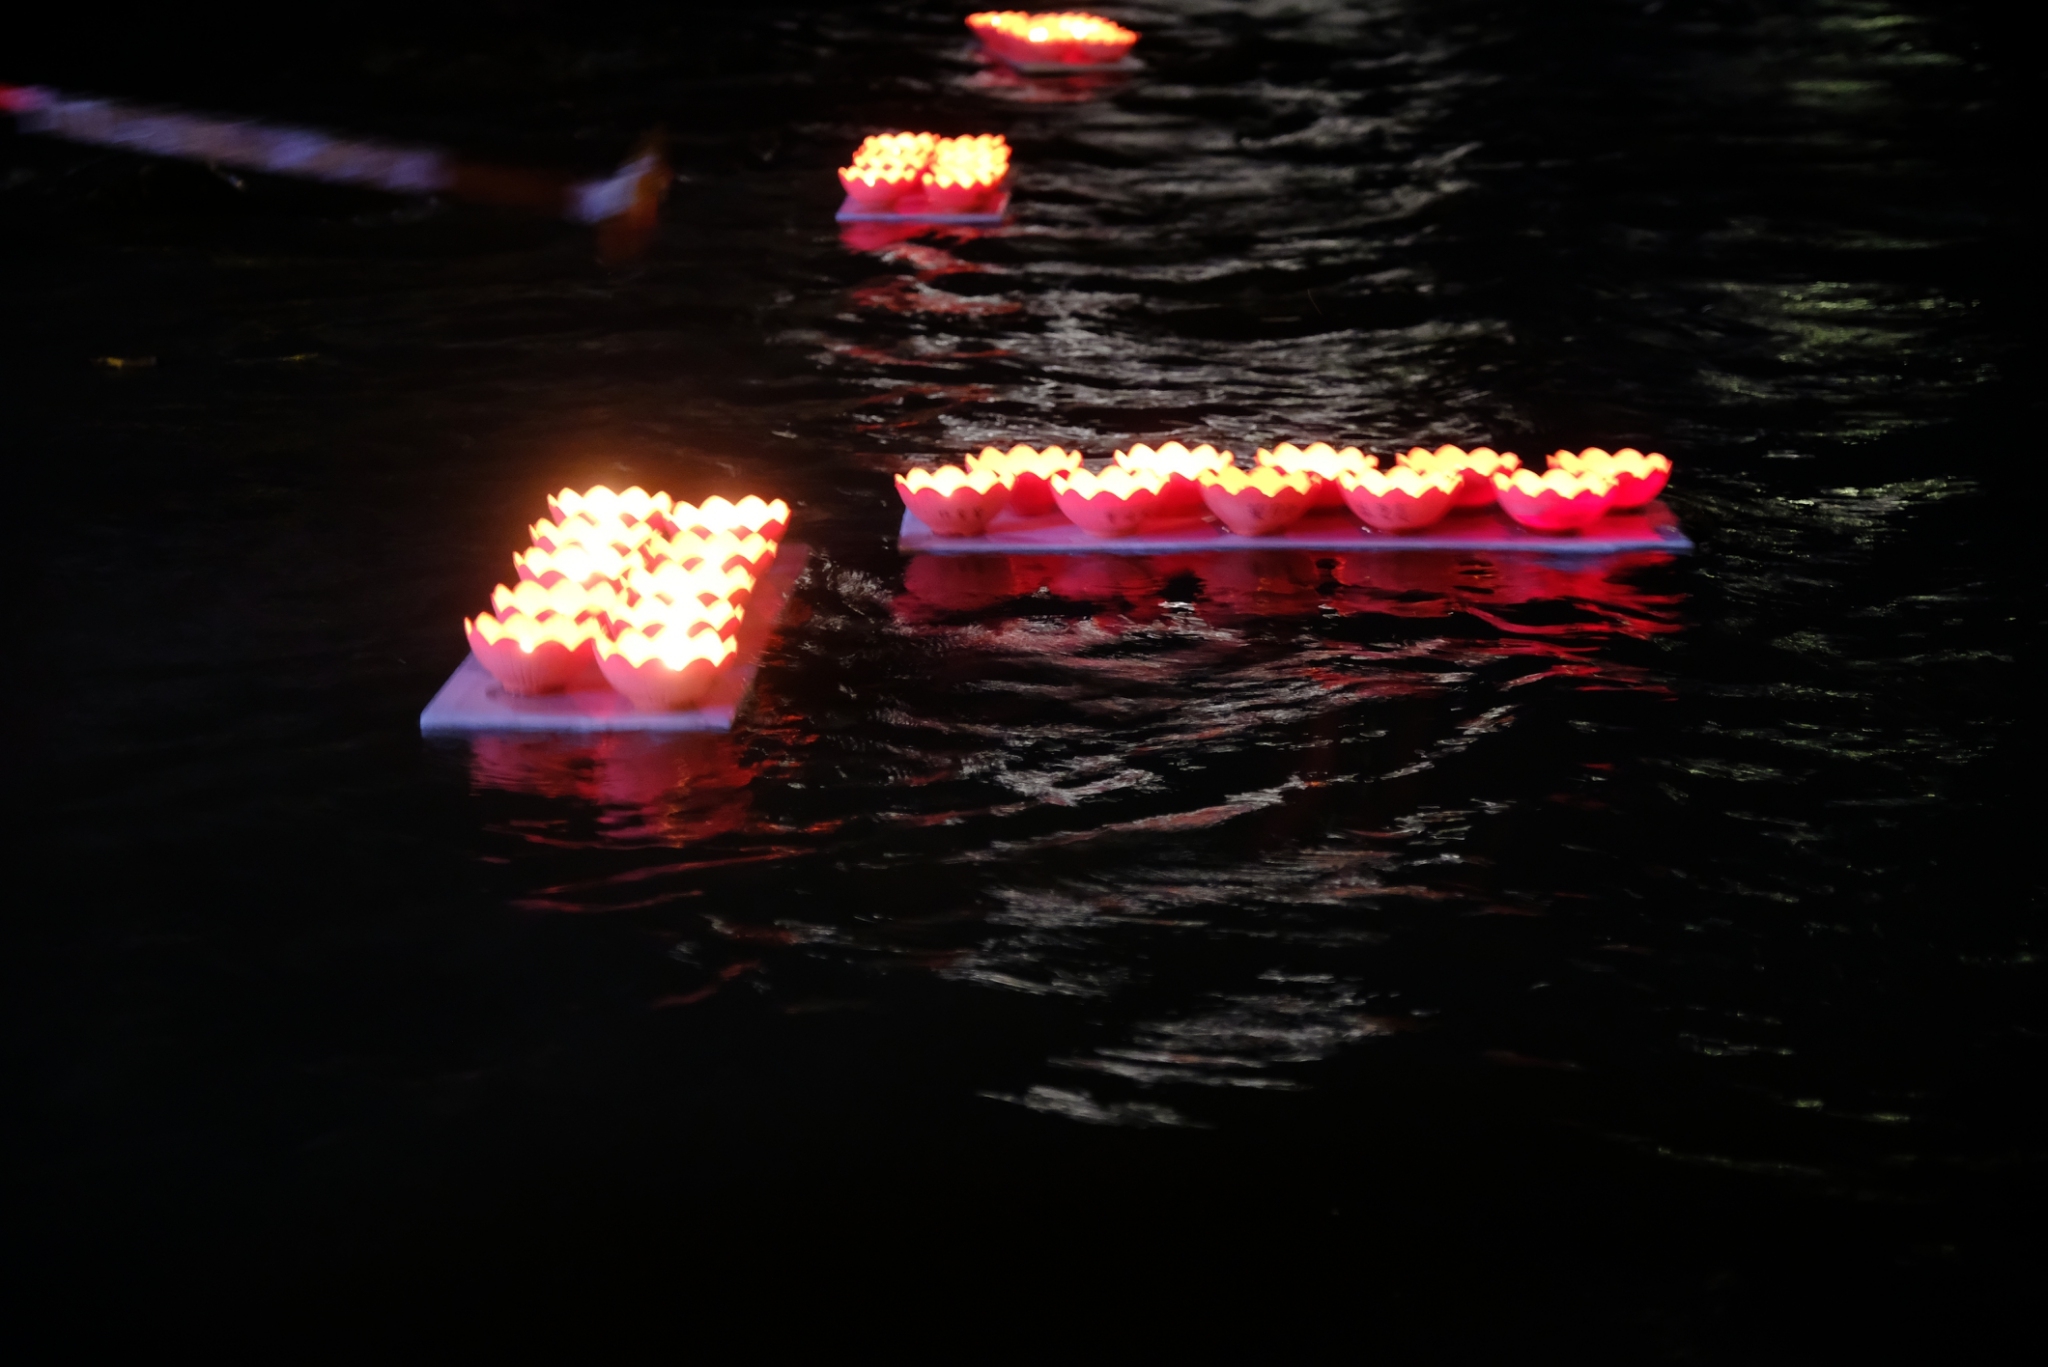 中和廣濟宮、福和宮於秀朗橋下施放由魚飼料製成的蓮花水燈，兼顧傳統且環保。